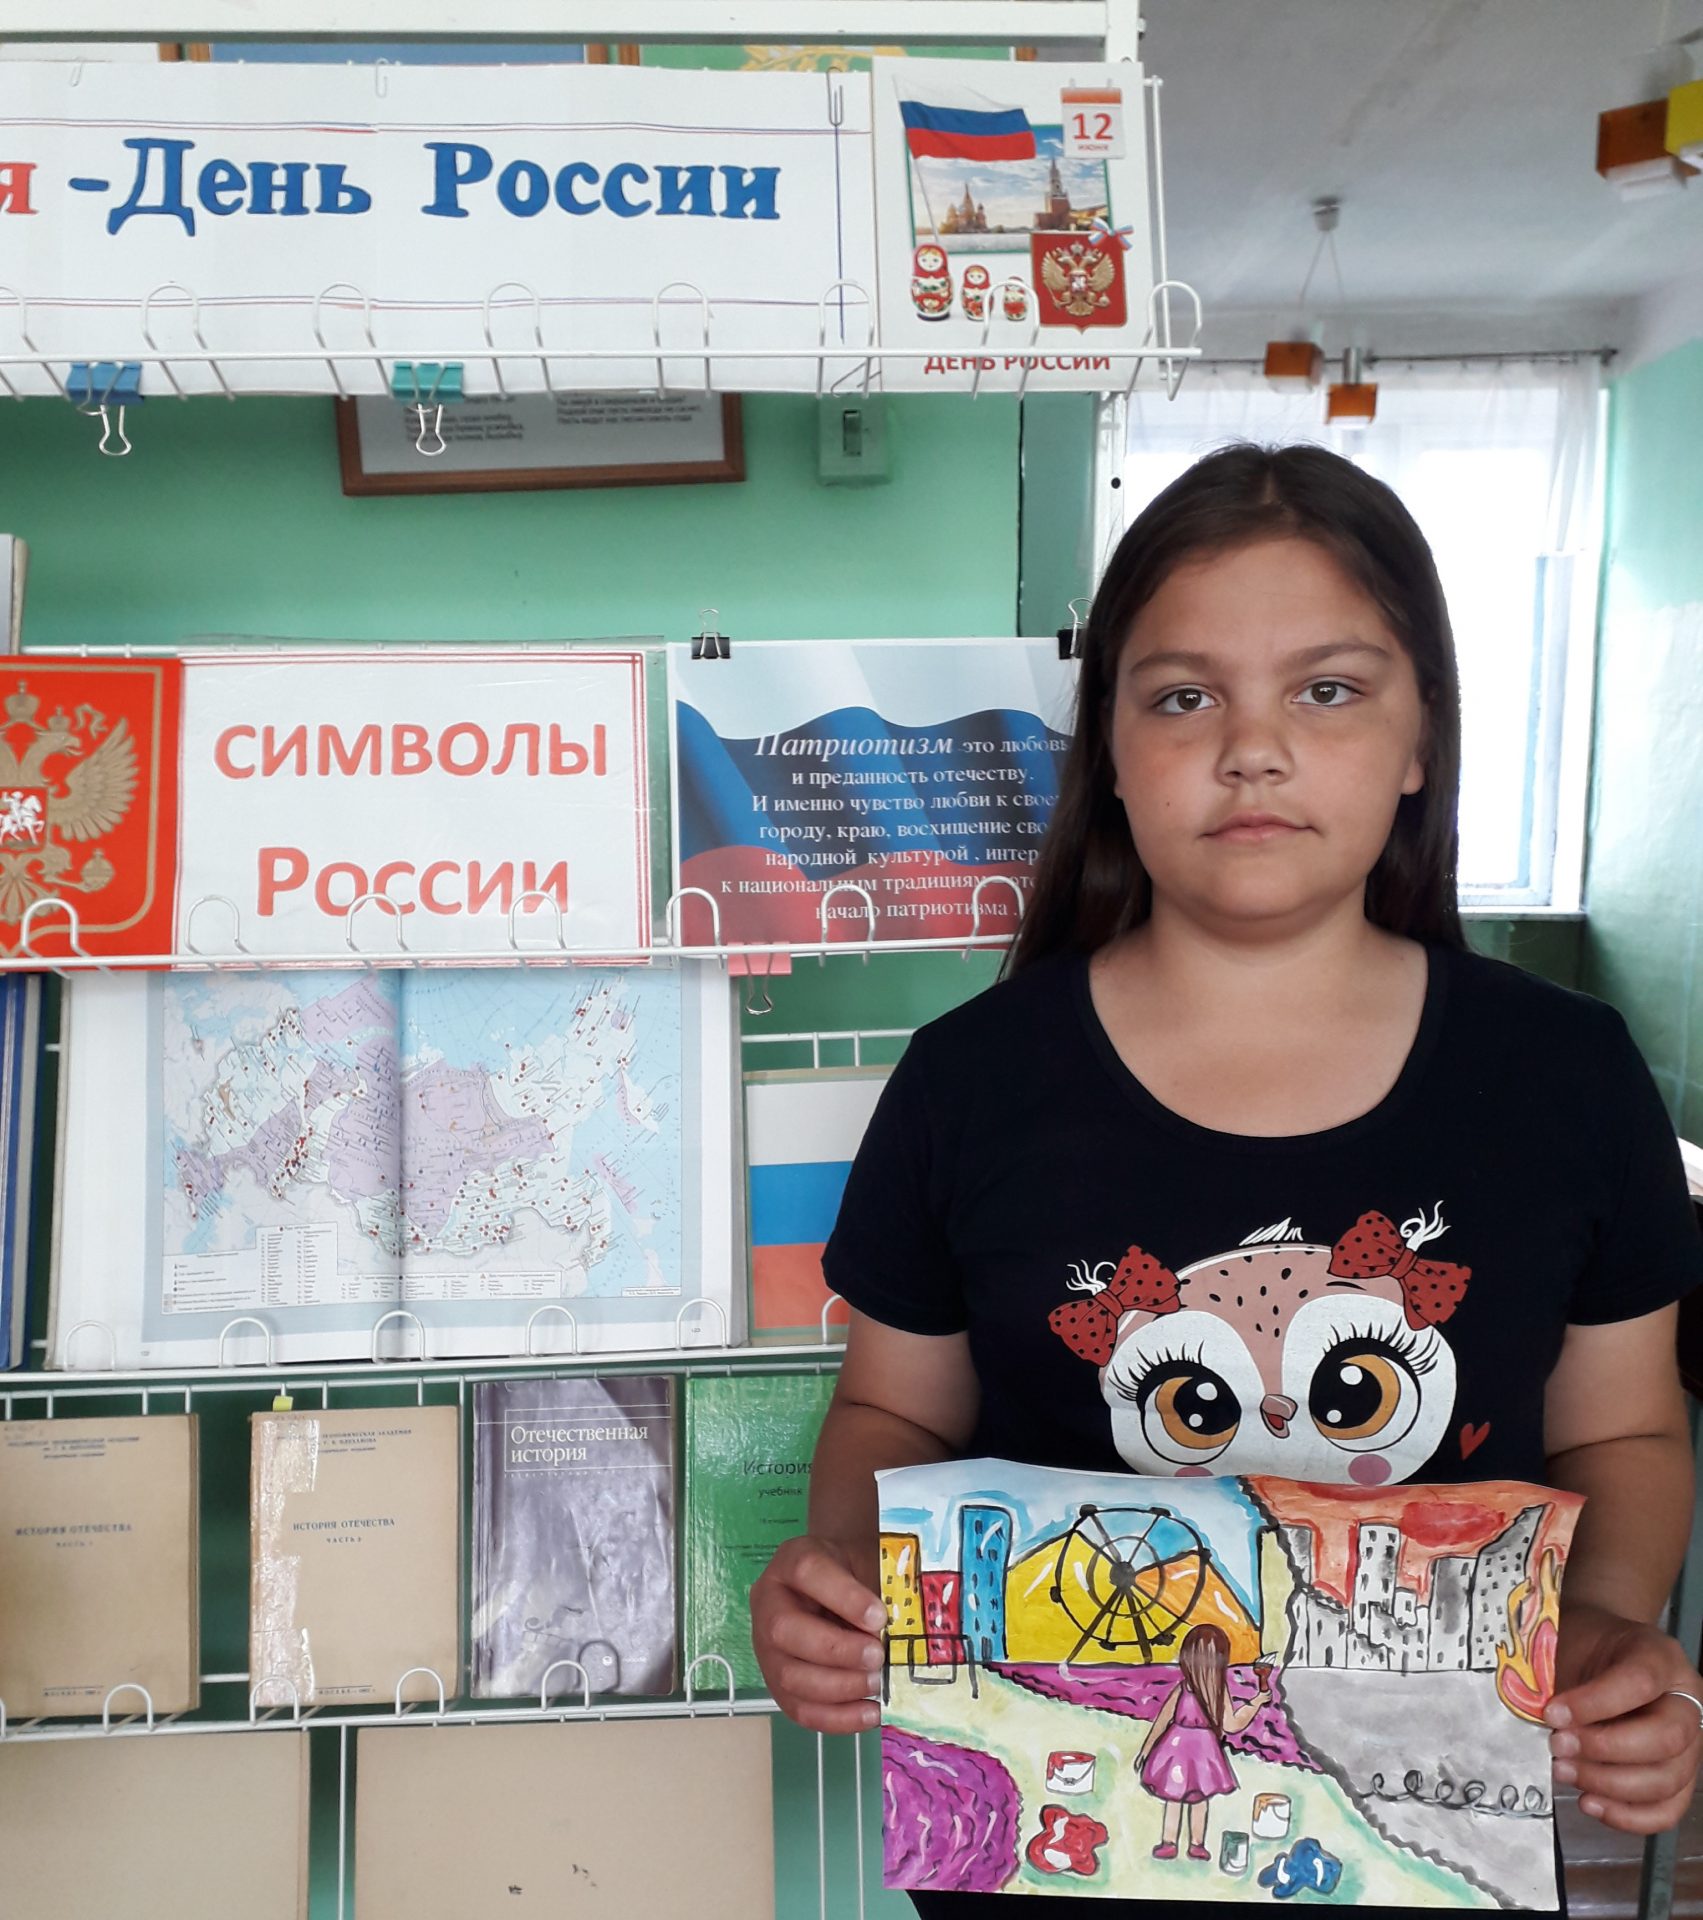 Сайт конкурса дети россии. Мир библиотеки глазами детей.